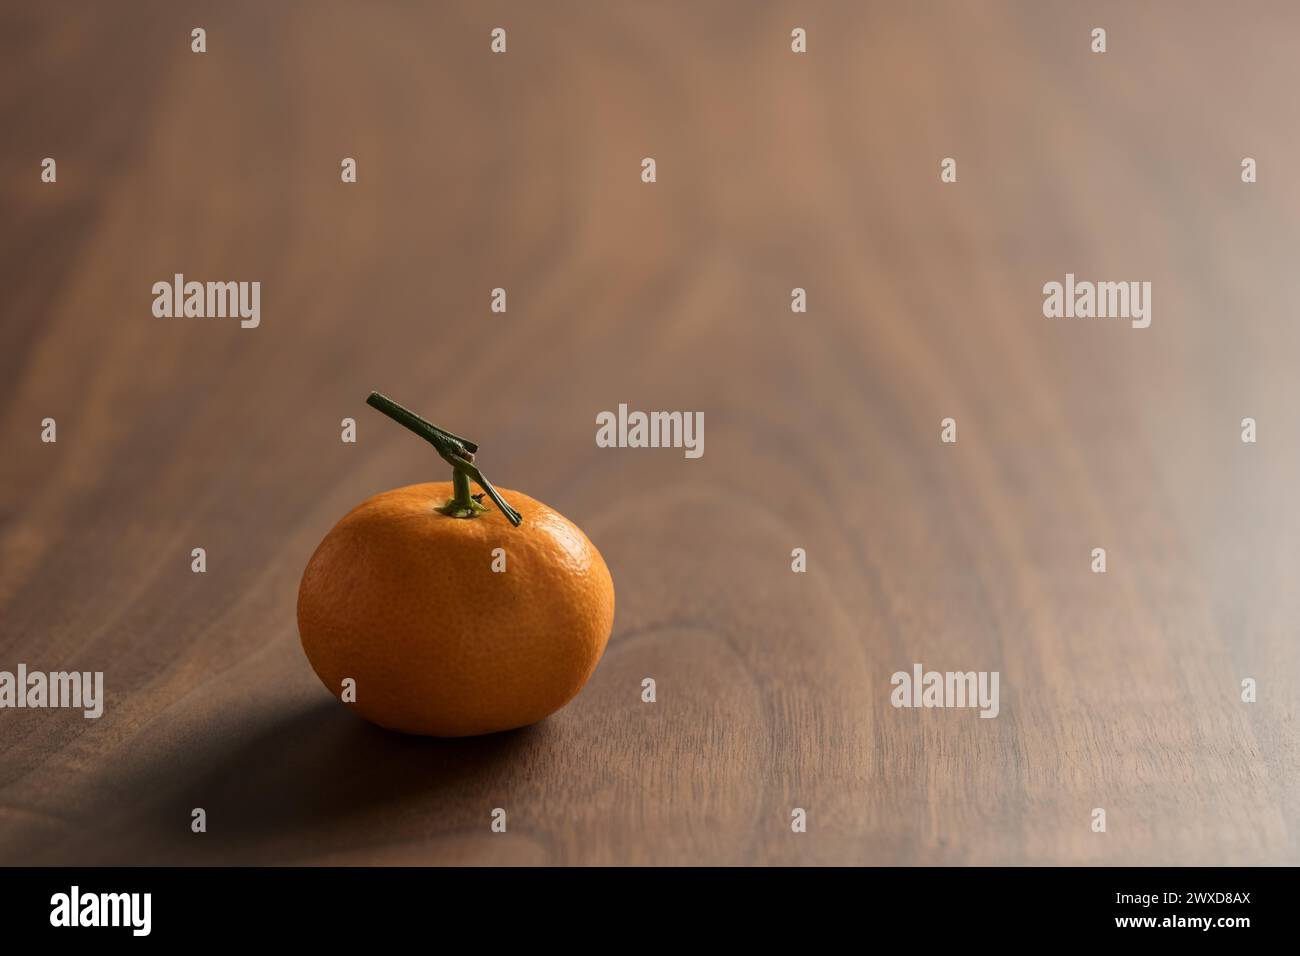 Piccolo mandarino organico con stelo su tavola in legno, messa a fuoco superficiale Foto Stock